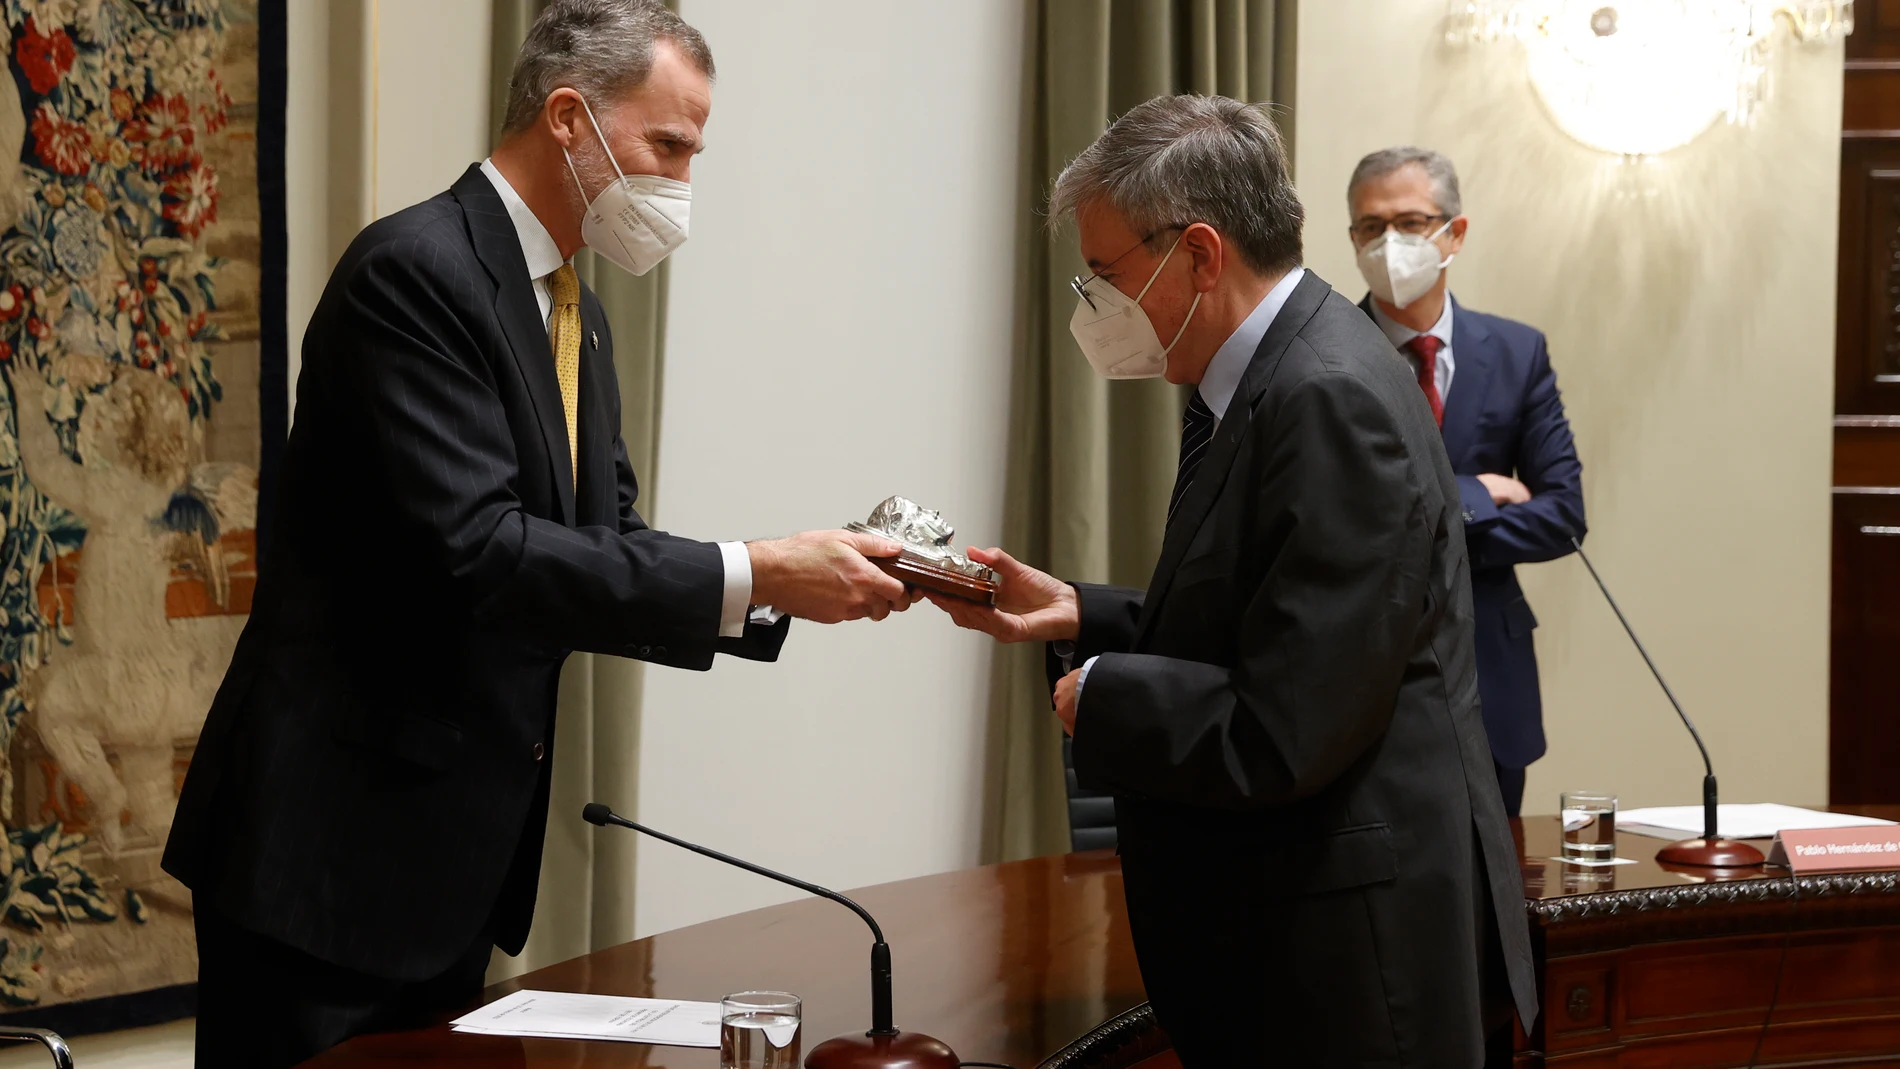 El rey Felipe VI hace entrega del Premio de Economía Rey de España a Manuel Arellano González durante una ceremonia celebrada este miércoles en el Banco de España en Madrid